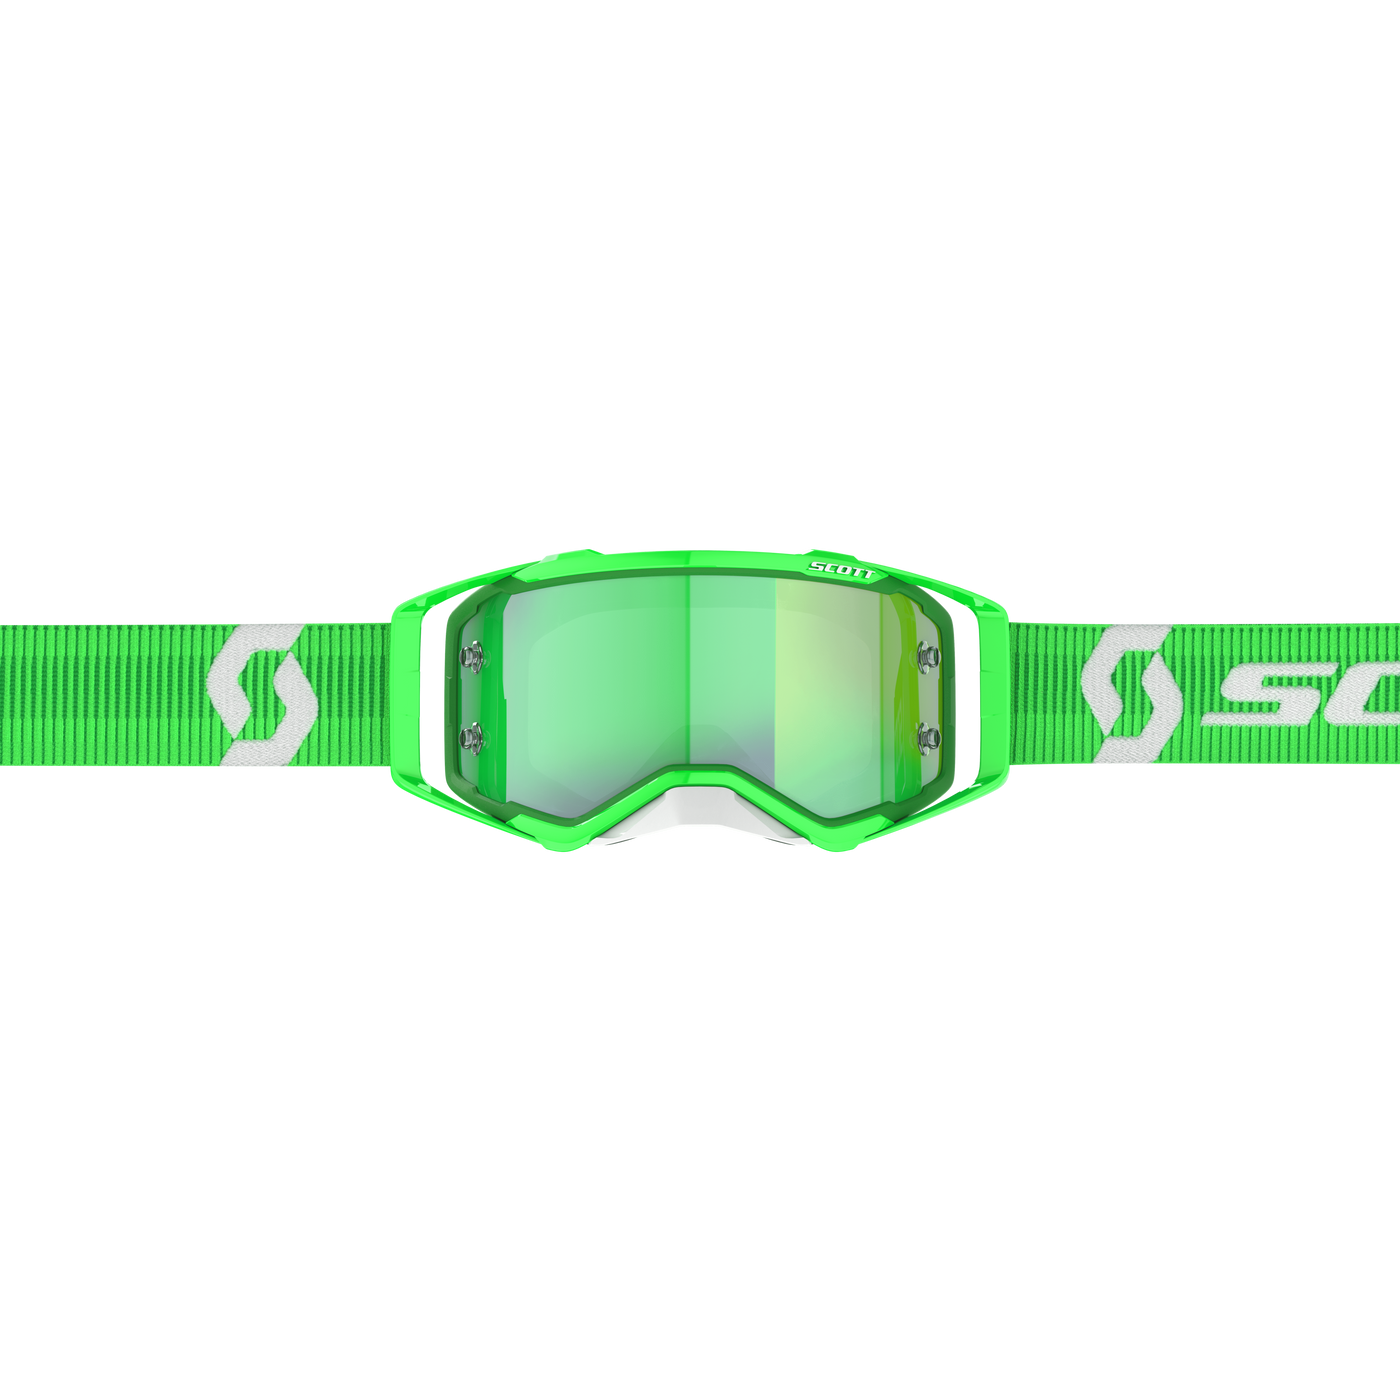 Scott Prospect Goggle, Green / White - Green Chrome Works Lens